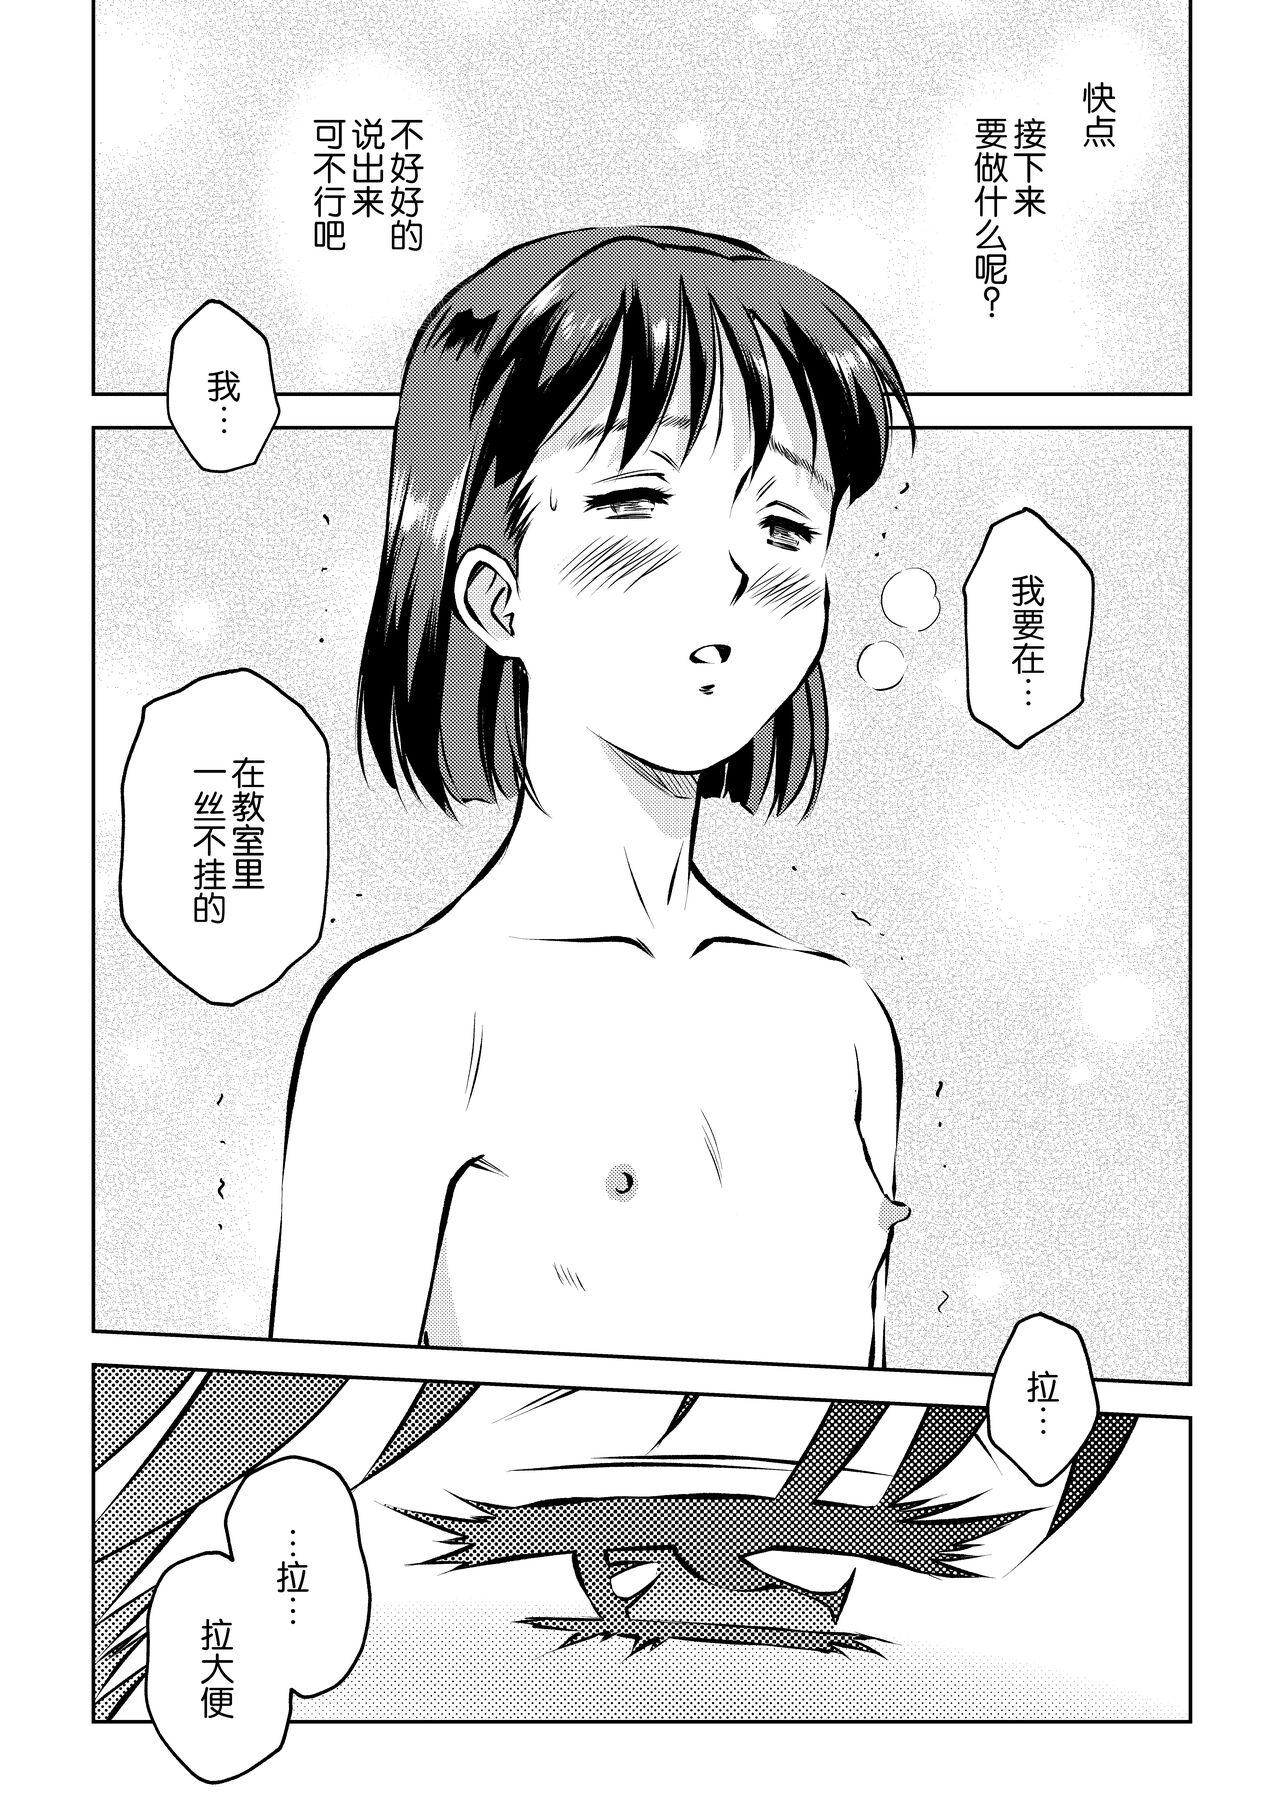 Cojiendo Hougago no Kyoushitsu de Porn - Page 9